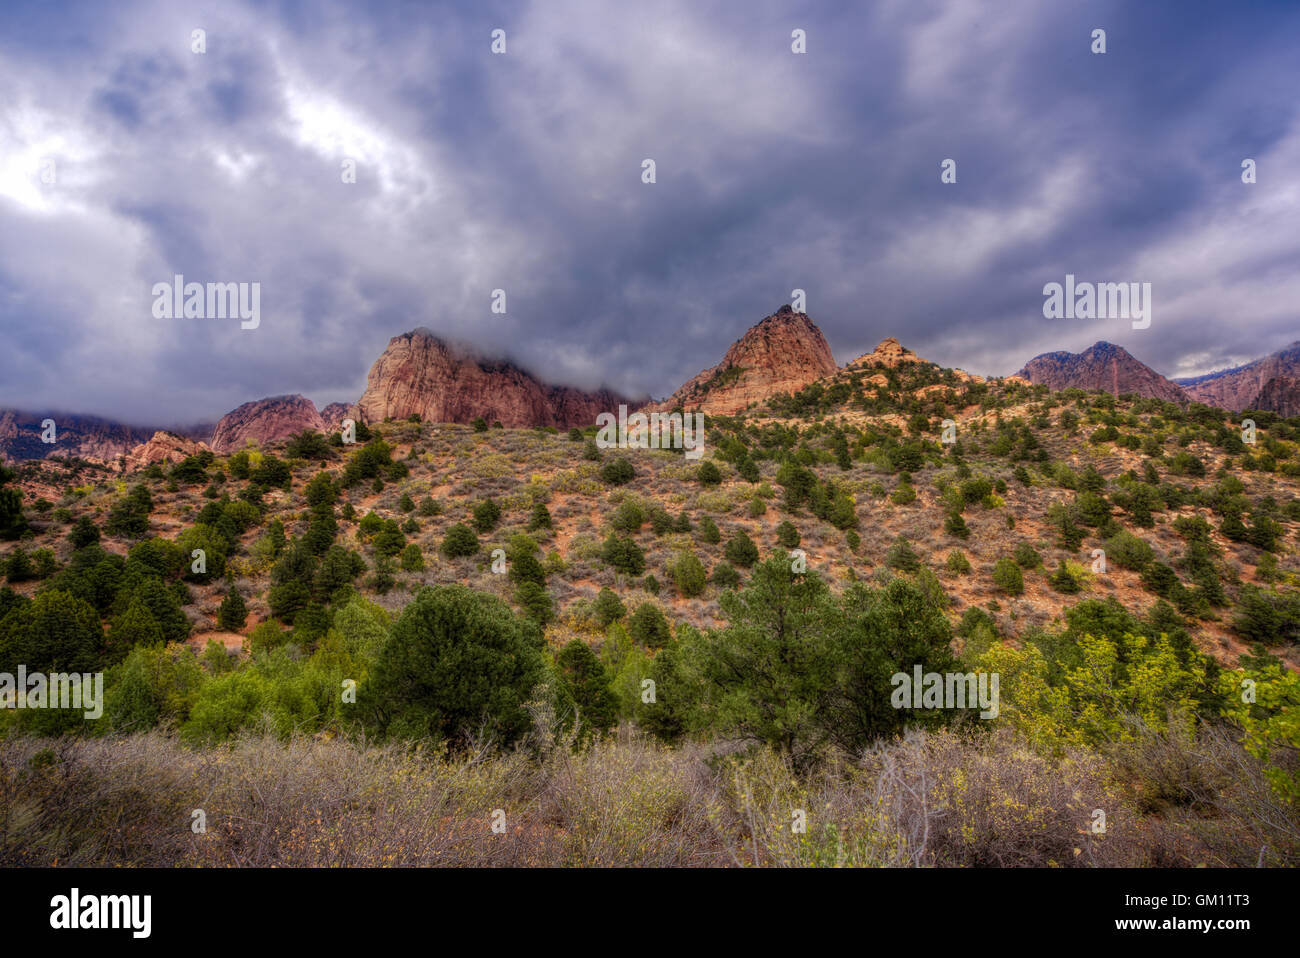 Un jour de pluie dans la gamme de montagne, Kolob Canyons situé dans la région de Zion National Park, près de l'harmonie, de l'Utah. Banque D'Images